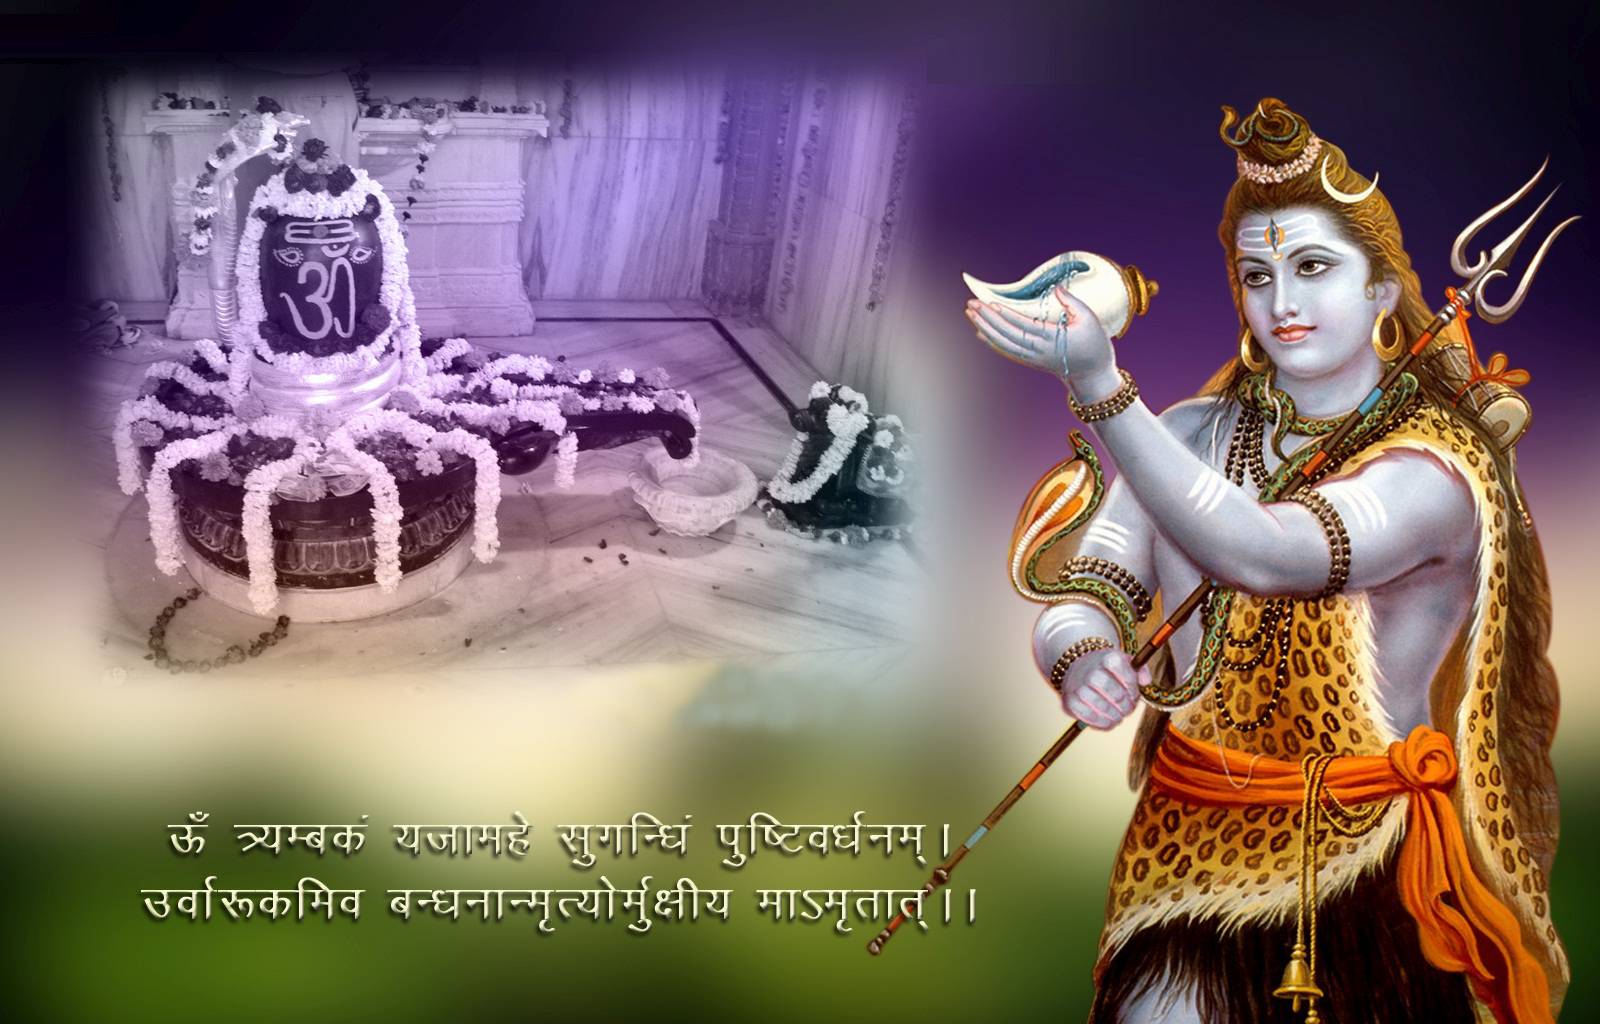 Happy Maha Shivratri Download Hd Wallpapers - Good Morning Images Mahashivratri , HD Wallpaper & Backgrounds